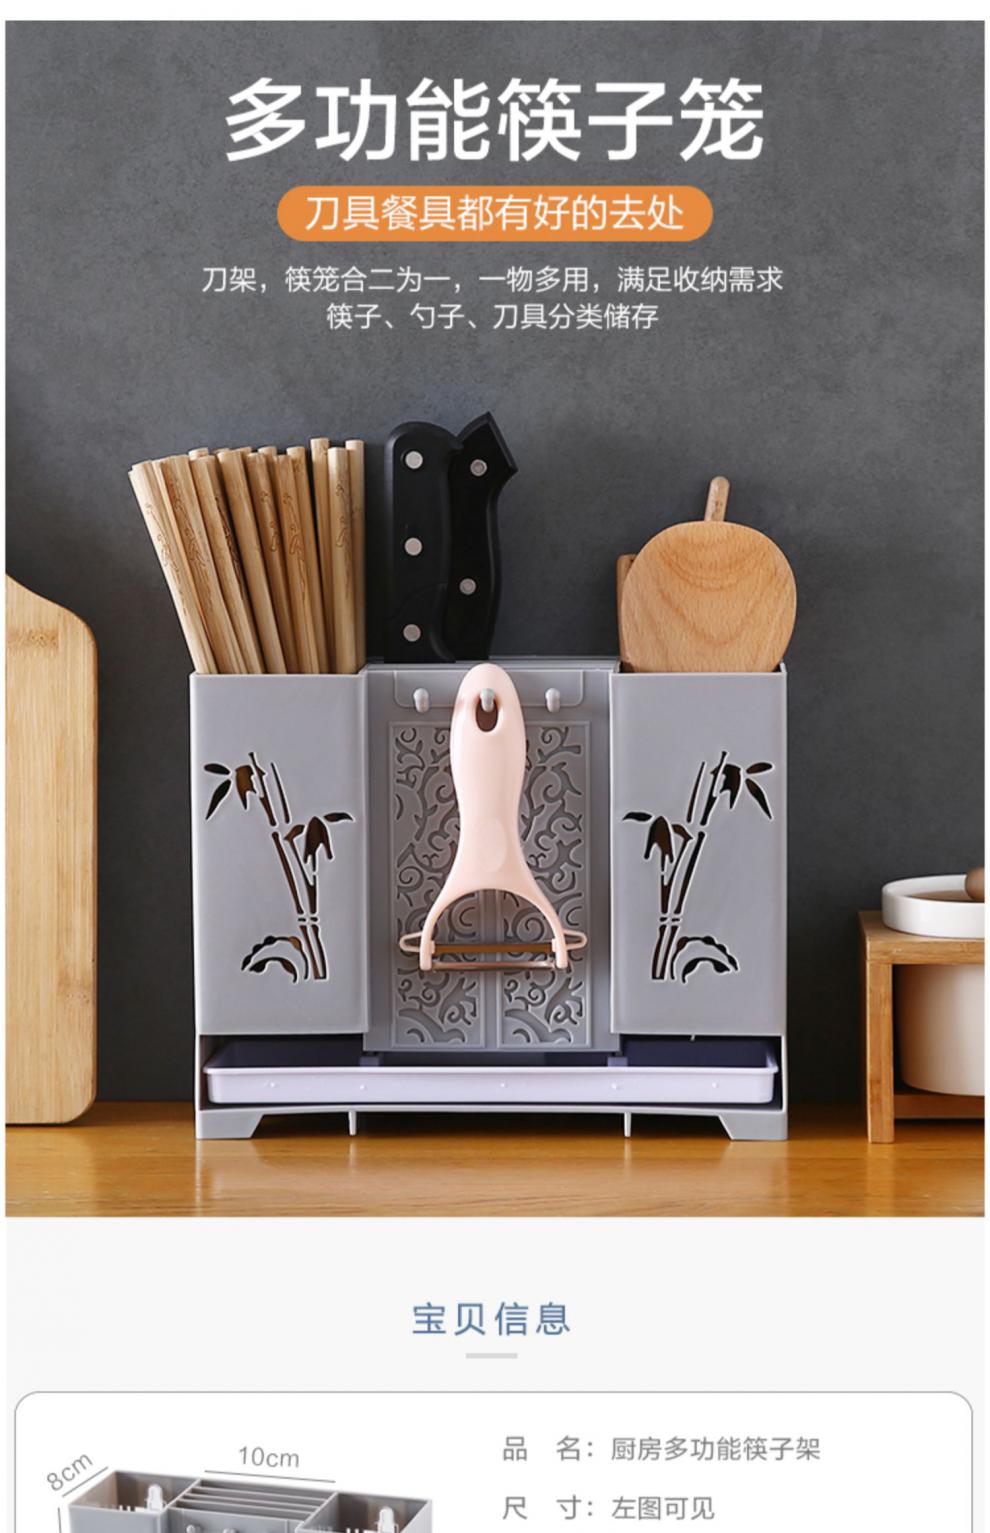 多功能家用壁挂式筷子收纳盒刀架筷子笼厨房勺子筷子盒沥水筷子筒